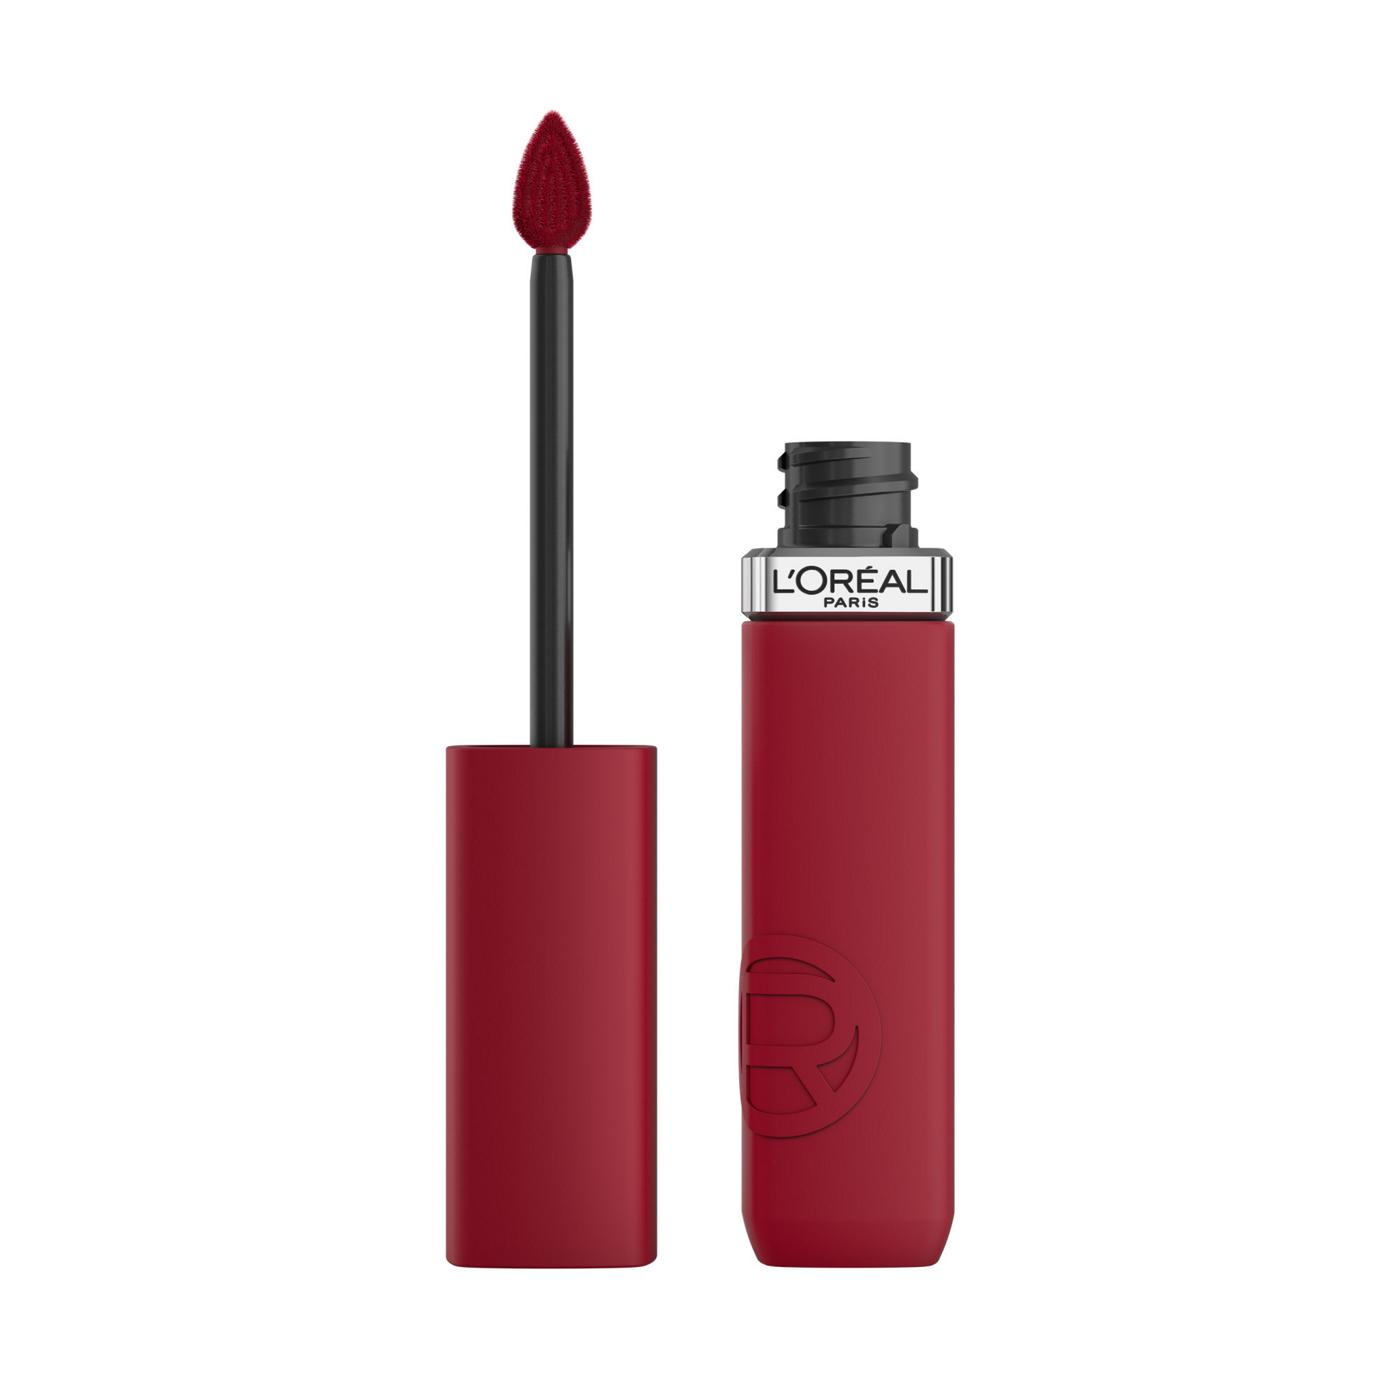 L'Oréal Paris Infallible Le Matte Resistance Liquid Lipstick - Le Rouge Paris; image 1 of 6